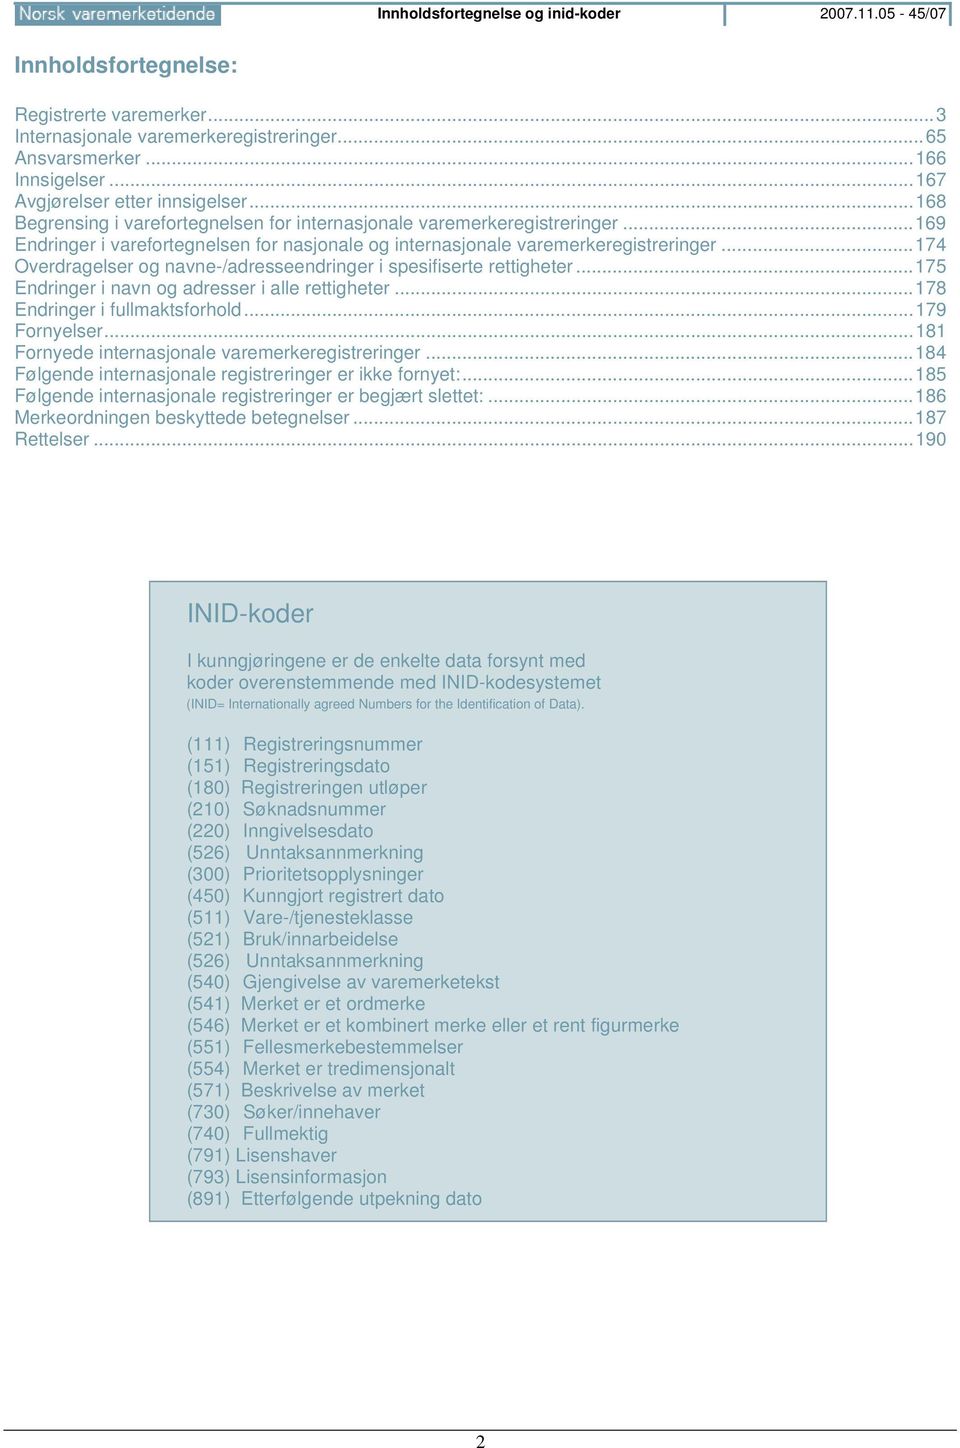 ..169 Endringer i varefortegnelsen for nasjonale og internasjonale varemerkeregistreringer...174 Overdragelser og navne-/adresseendringer i spesifiserte rettigheter.